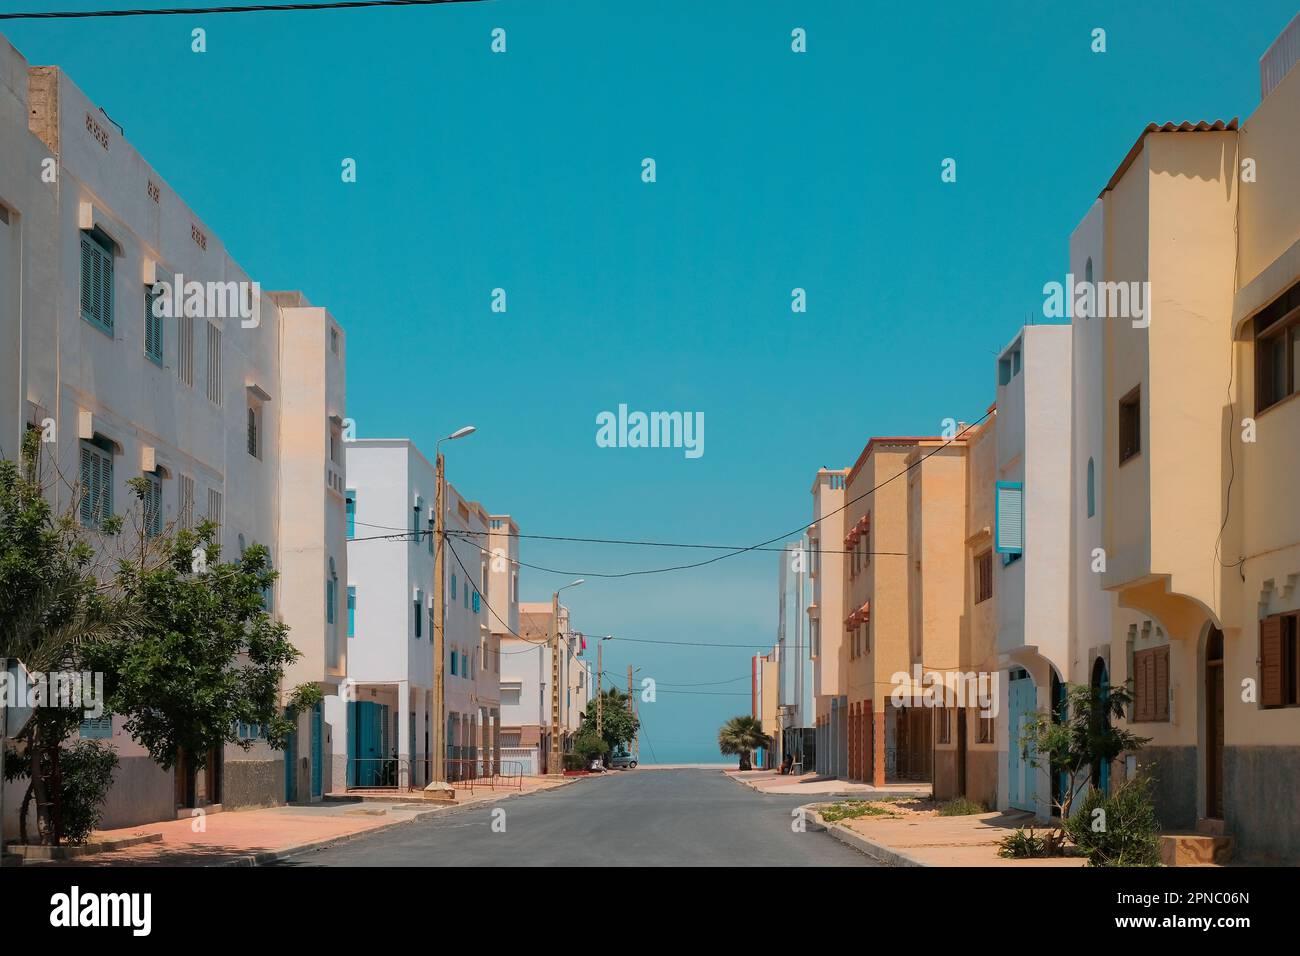 Rue vide à Sidi Ifni, Maroc bordée de bâtiments résidentiels des deux côtés. Petite ville côtière en Afrique. Jour lumineux, ciel bleu. Arrière-plan de voyage. Banque D'Images